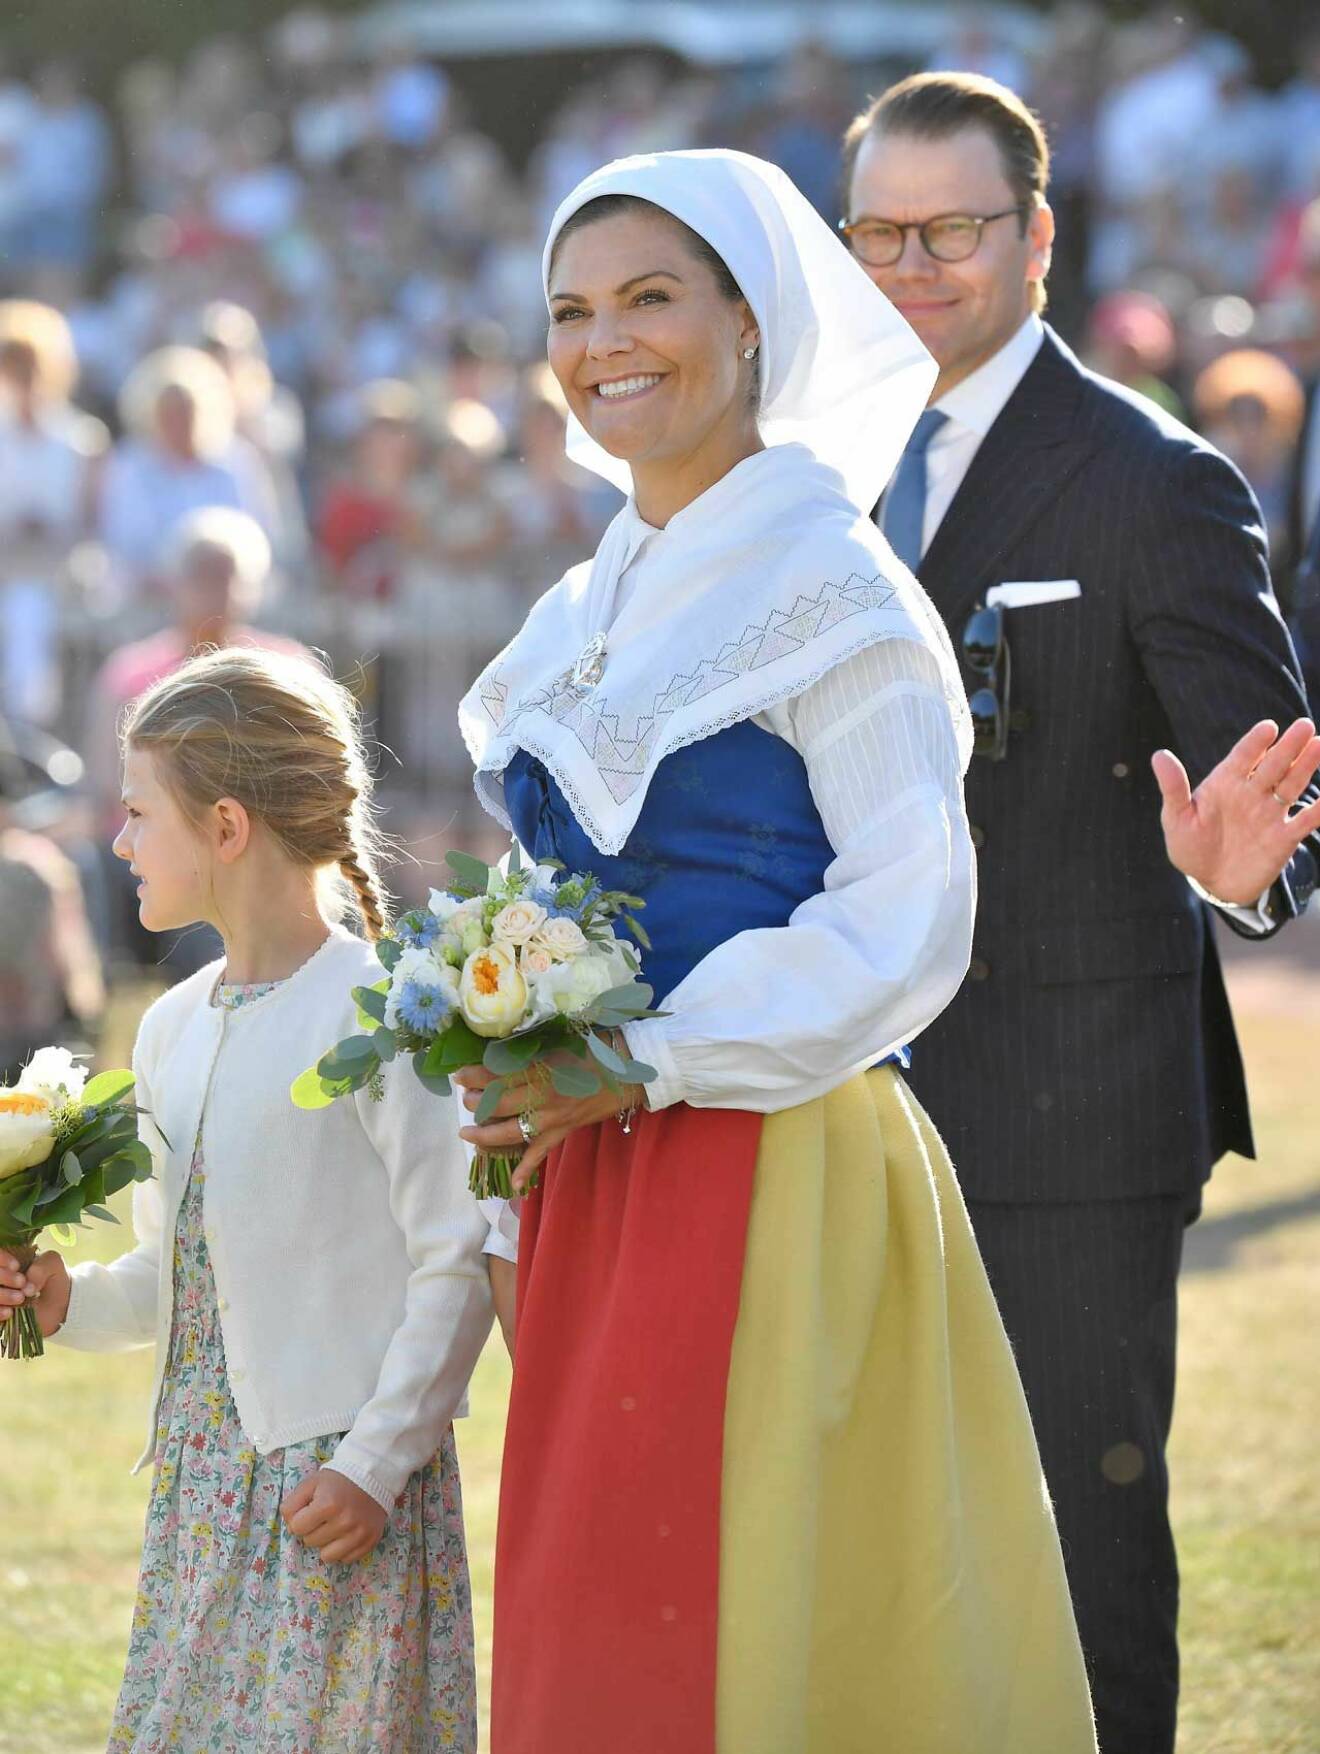 Kronprinsessan Victoria i sin Ölandsdräkt från Räpplinge socken. Räpplingedräkten.